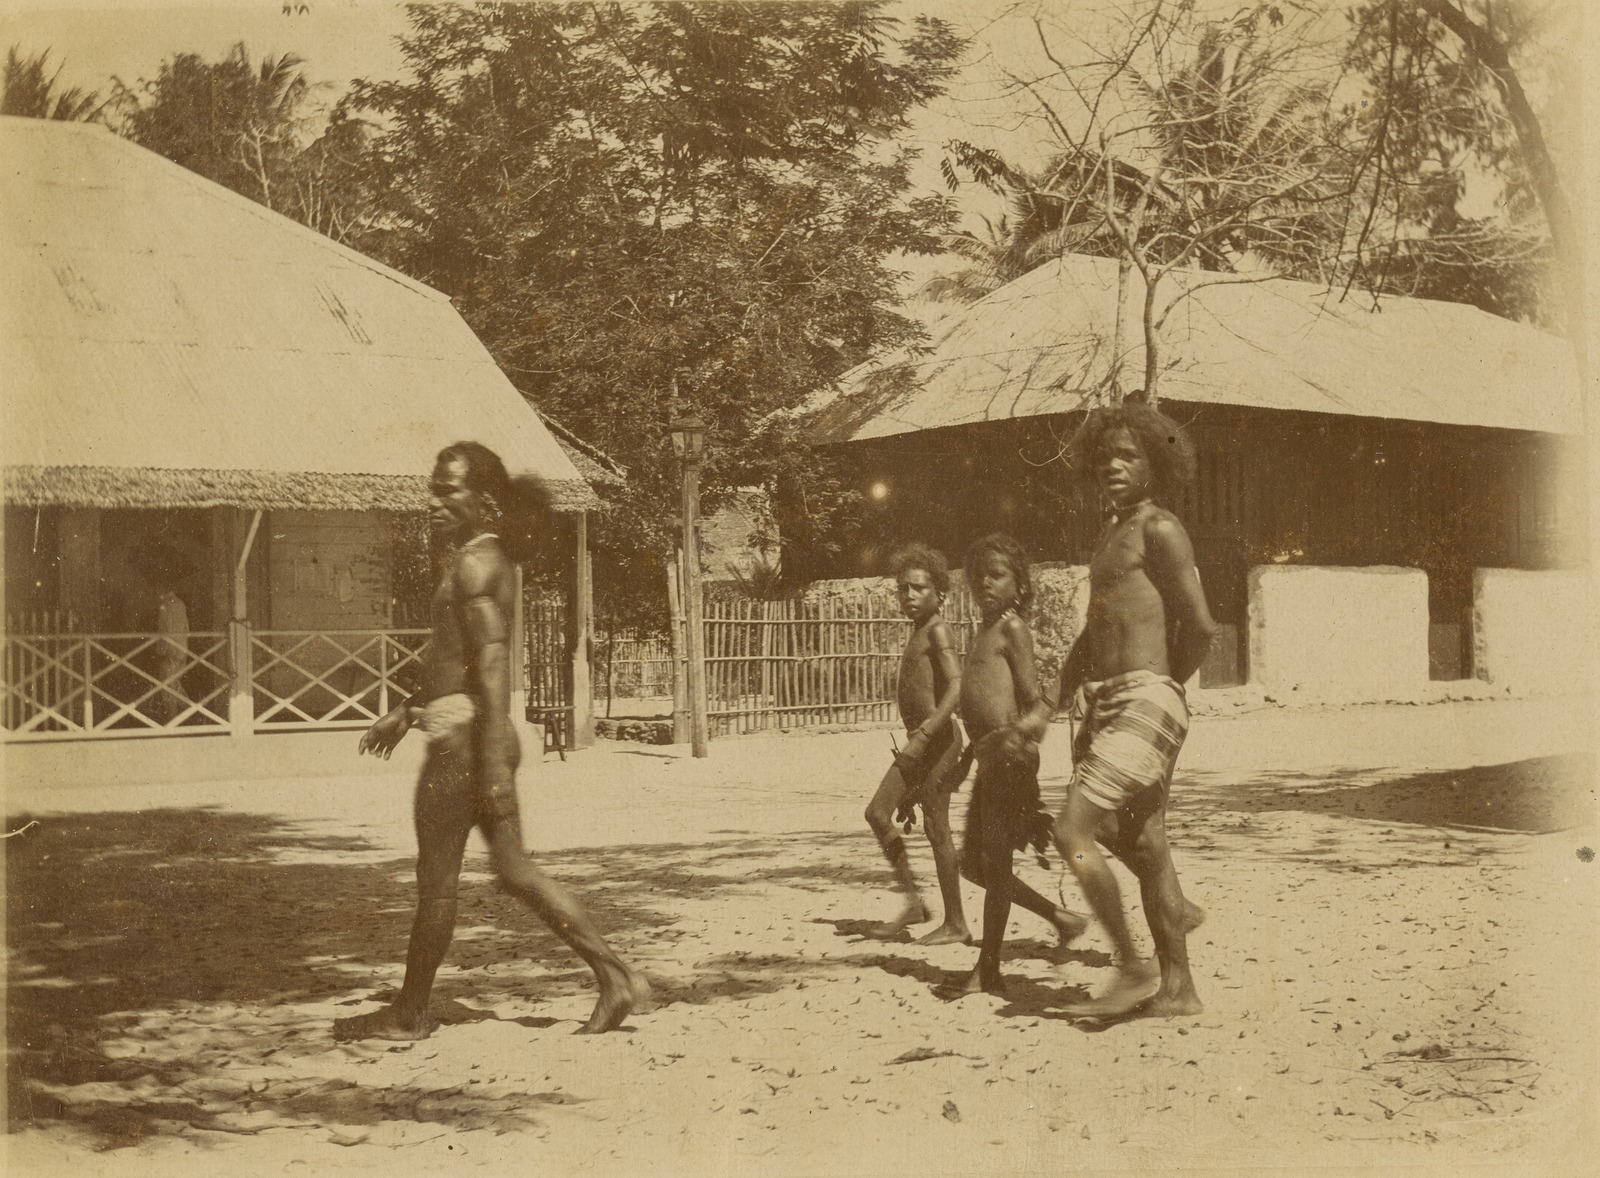 Aruese man and children walking in a street in Dobo, Warmar Islands, 1908